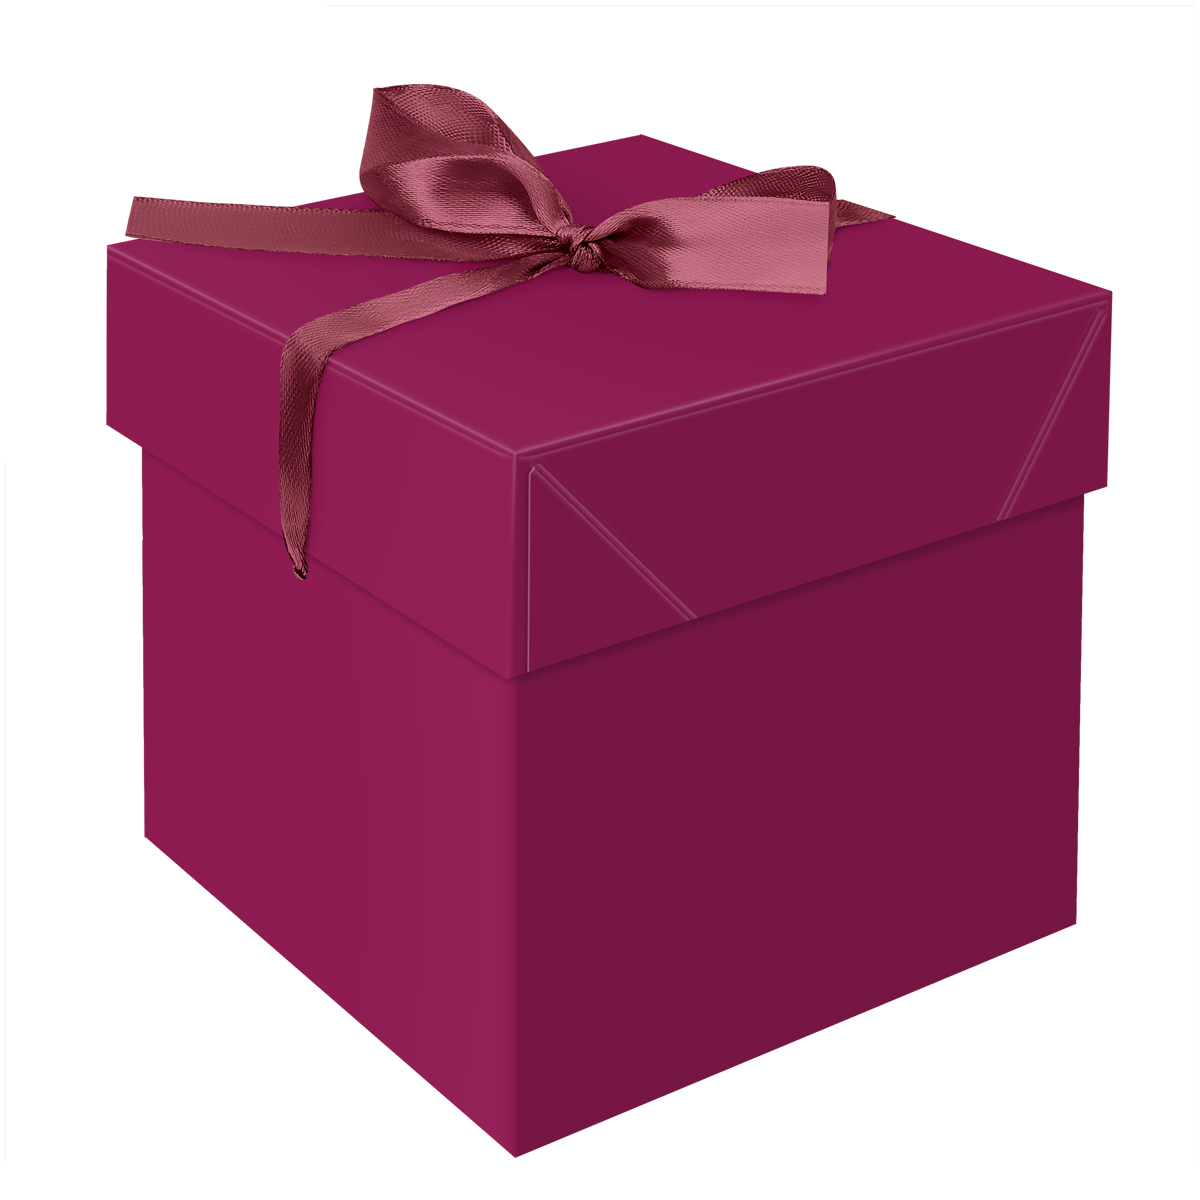 коробка складная подарочная meshu hearts 15 15 15 см с лентой отд фольгой Коробка складная подарочная MESHU 